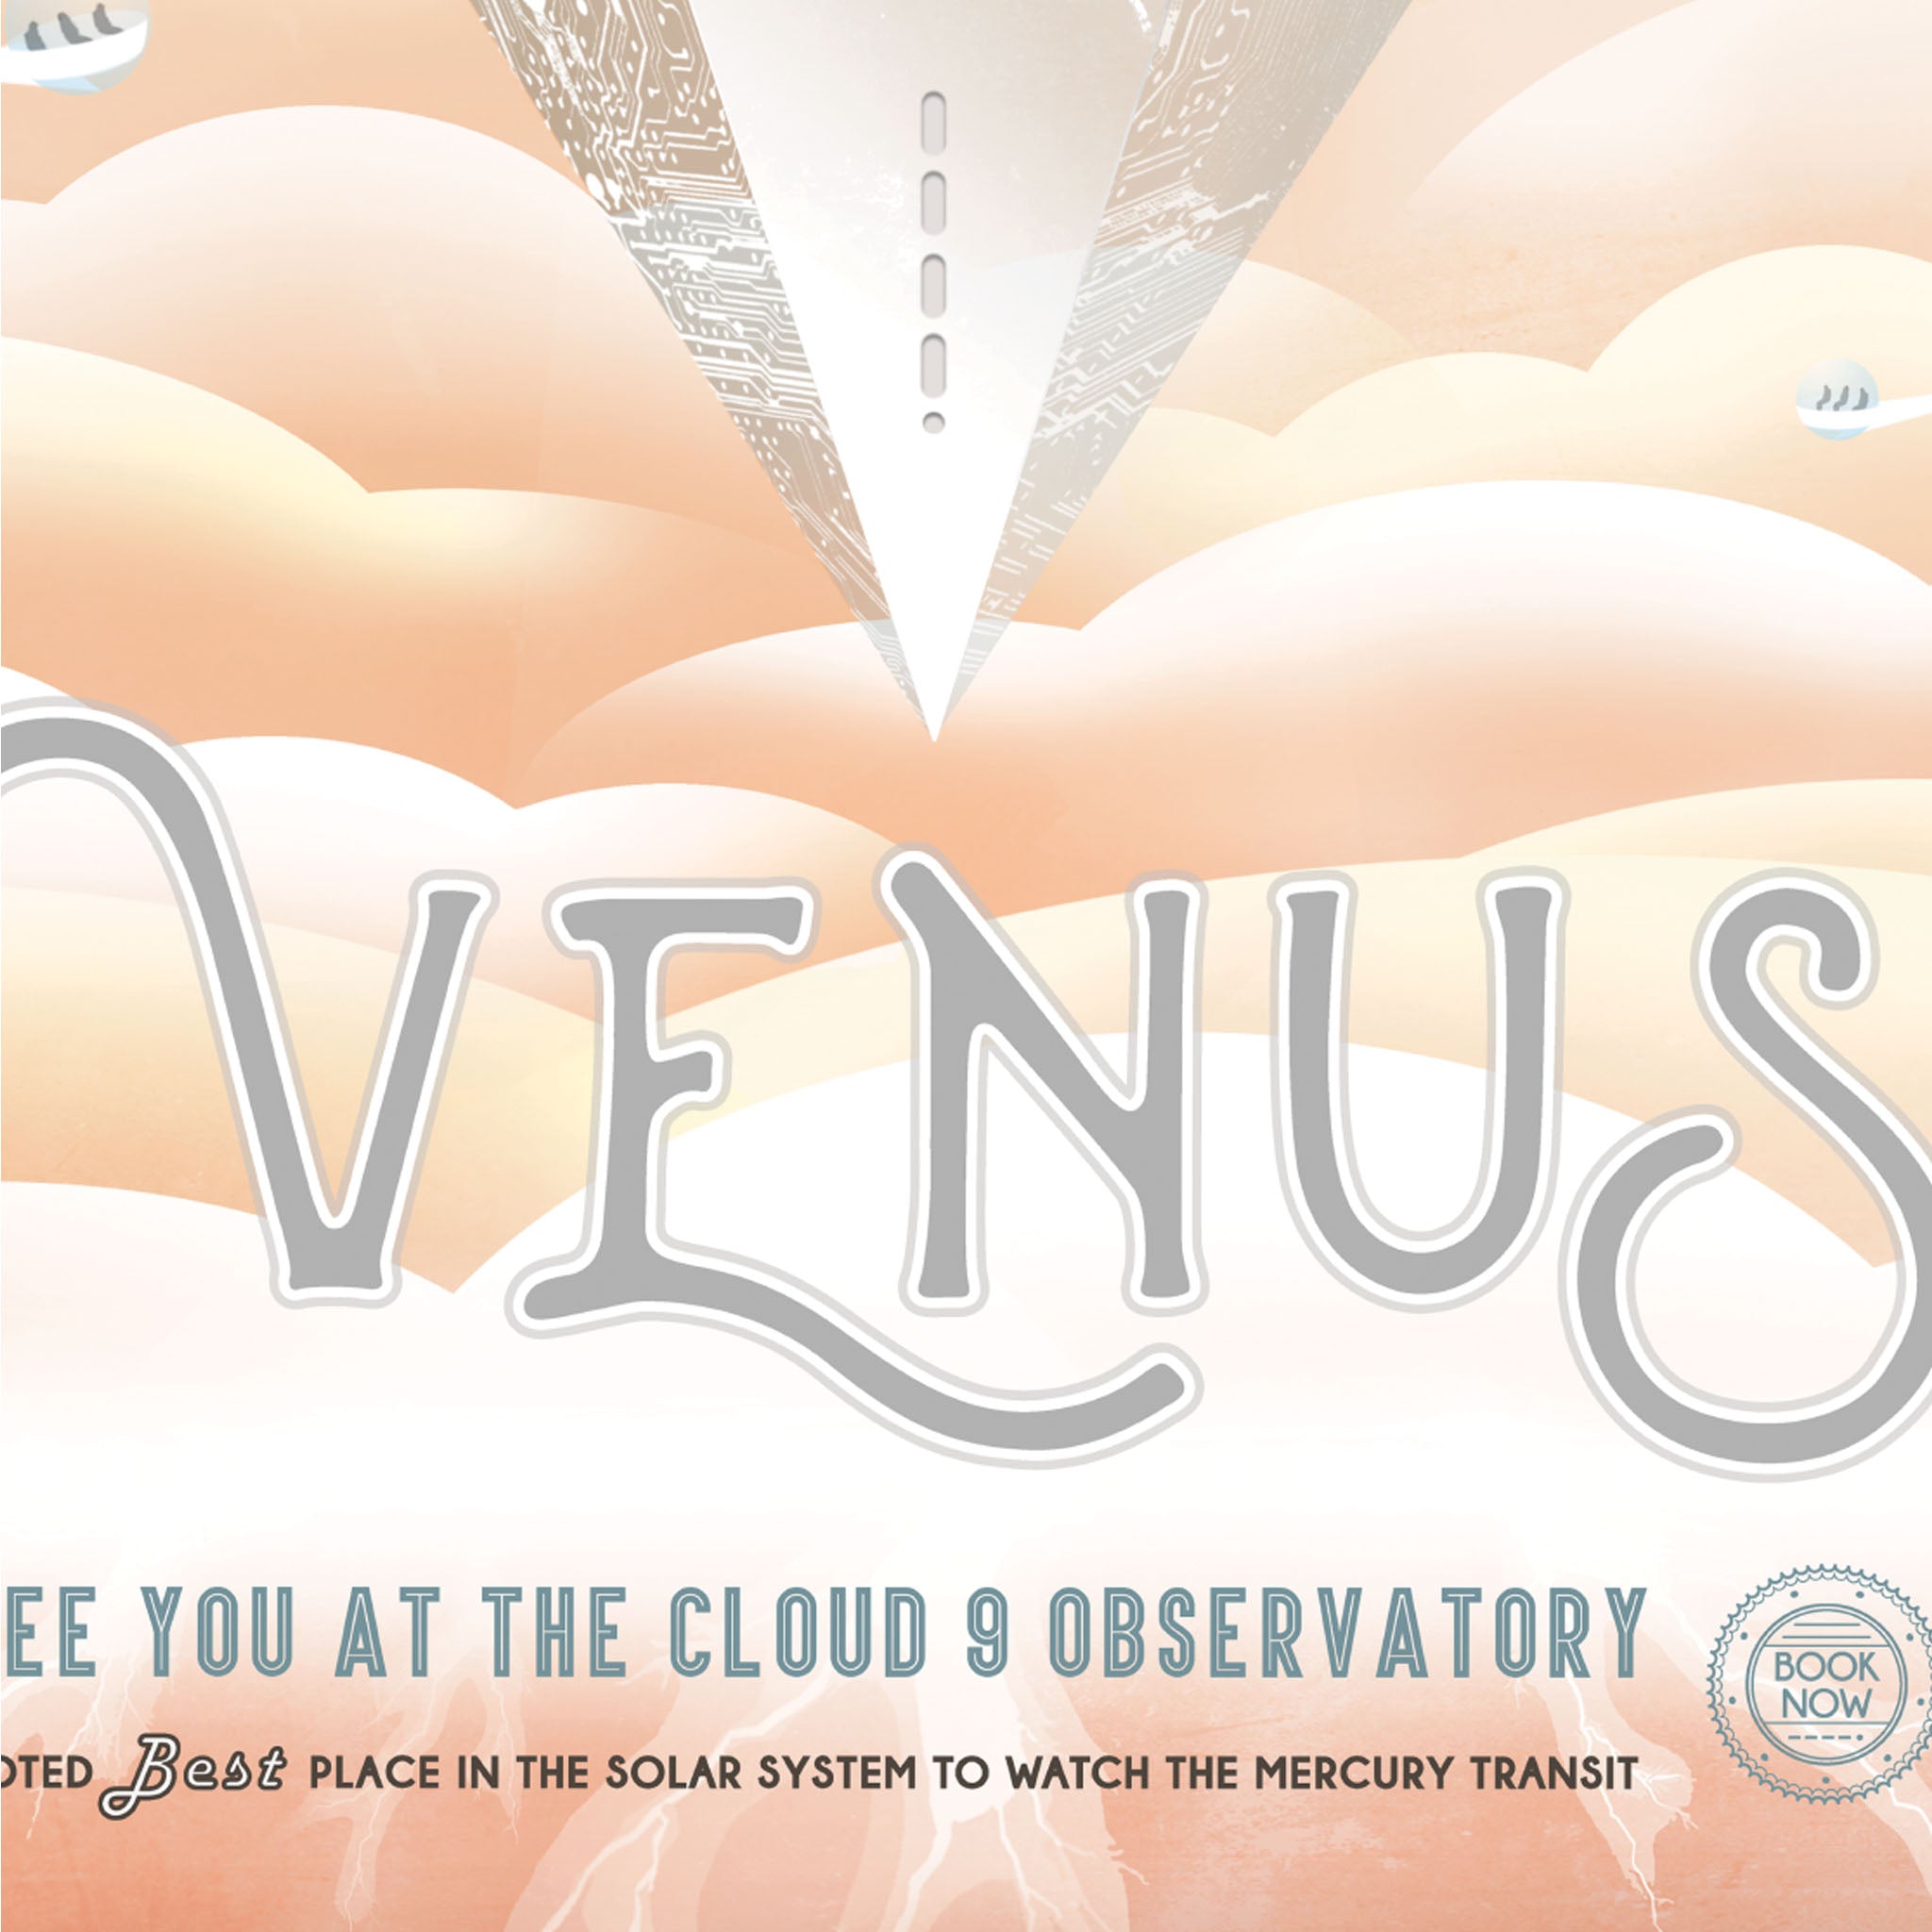 Venus  - Visions of the Future NASA